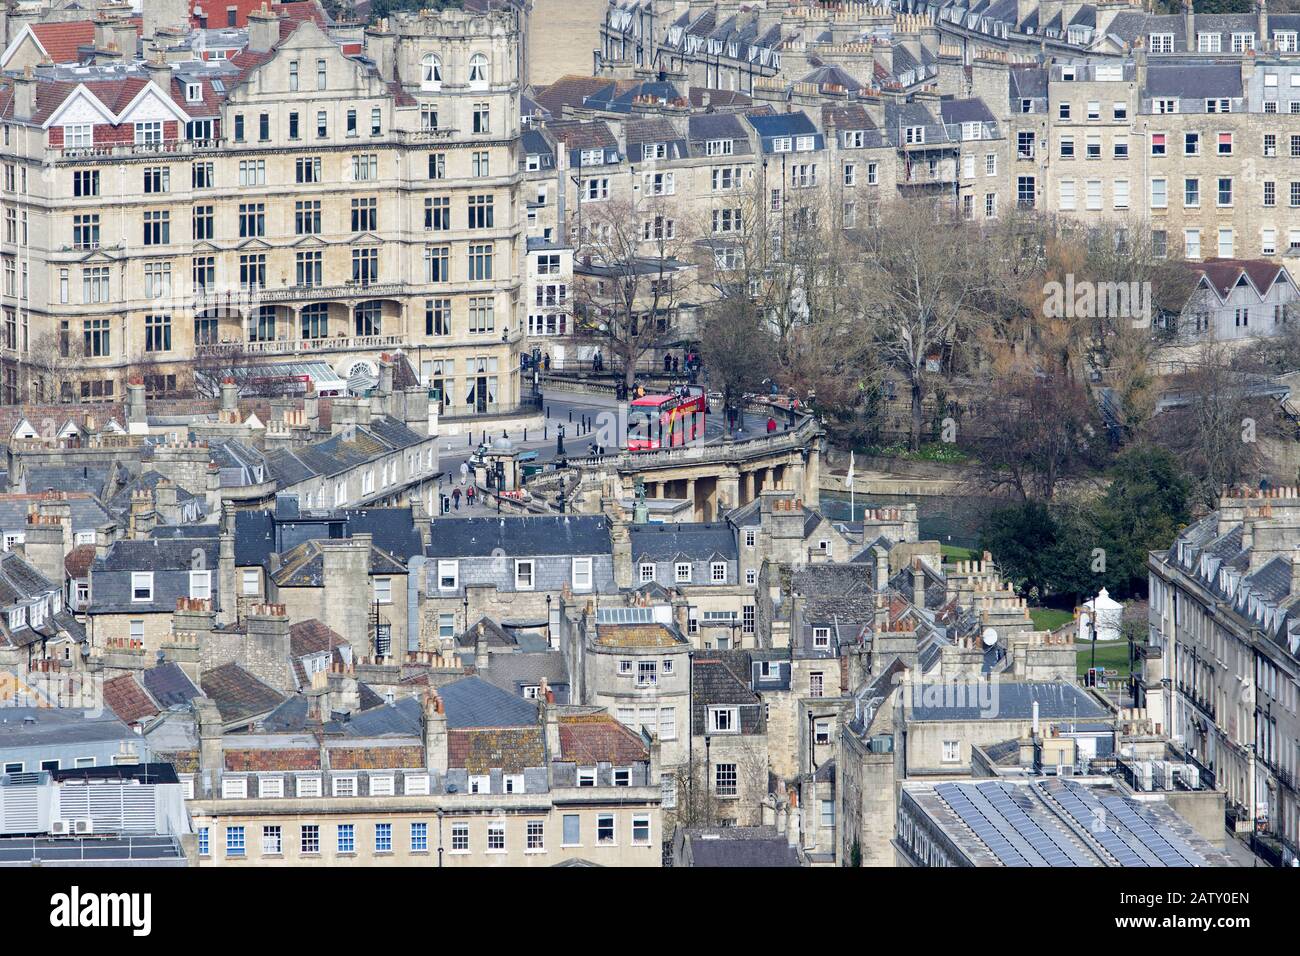 Vista panoramica della città di Bath vista da Alexandra Park che mostra case, negozi e l'architettura di Bath, Inghilterra, Regno Unito Foto Stock